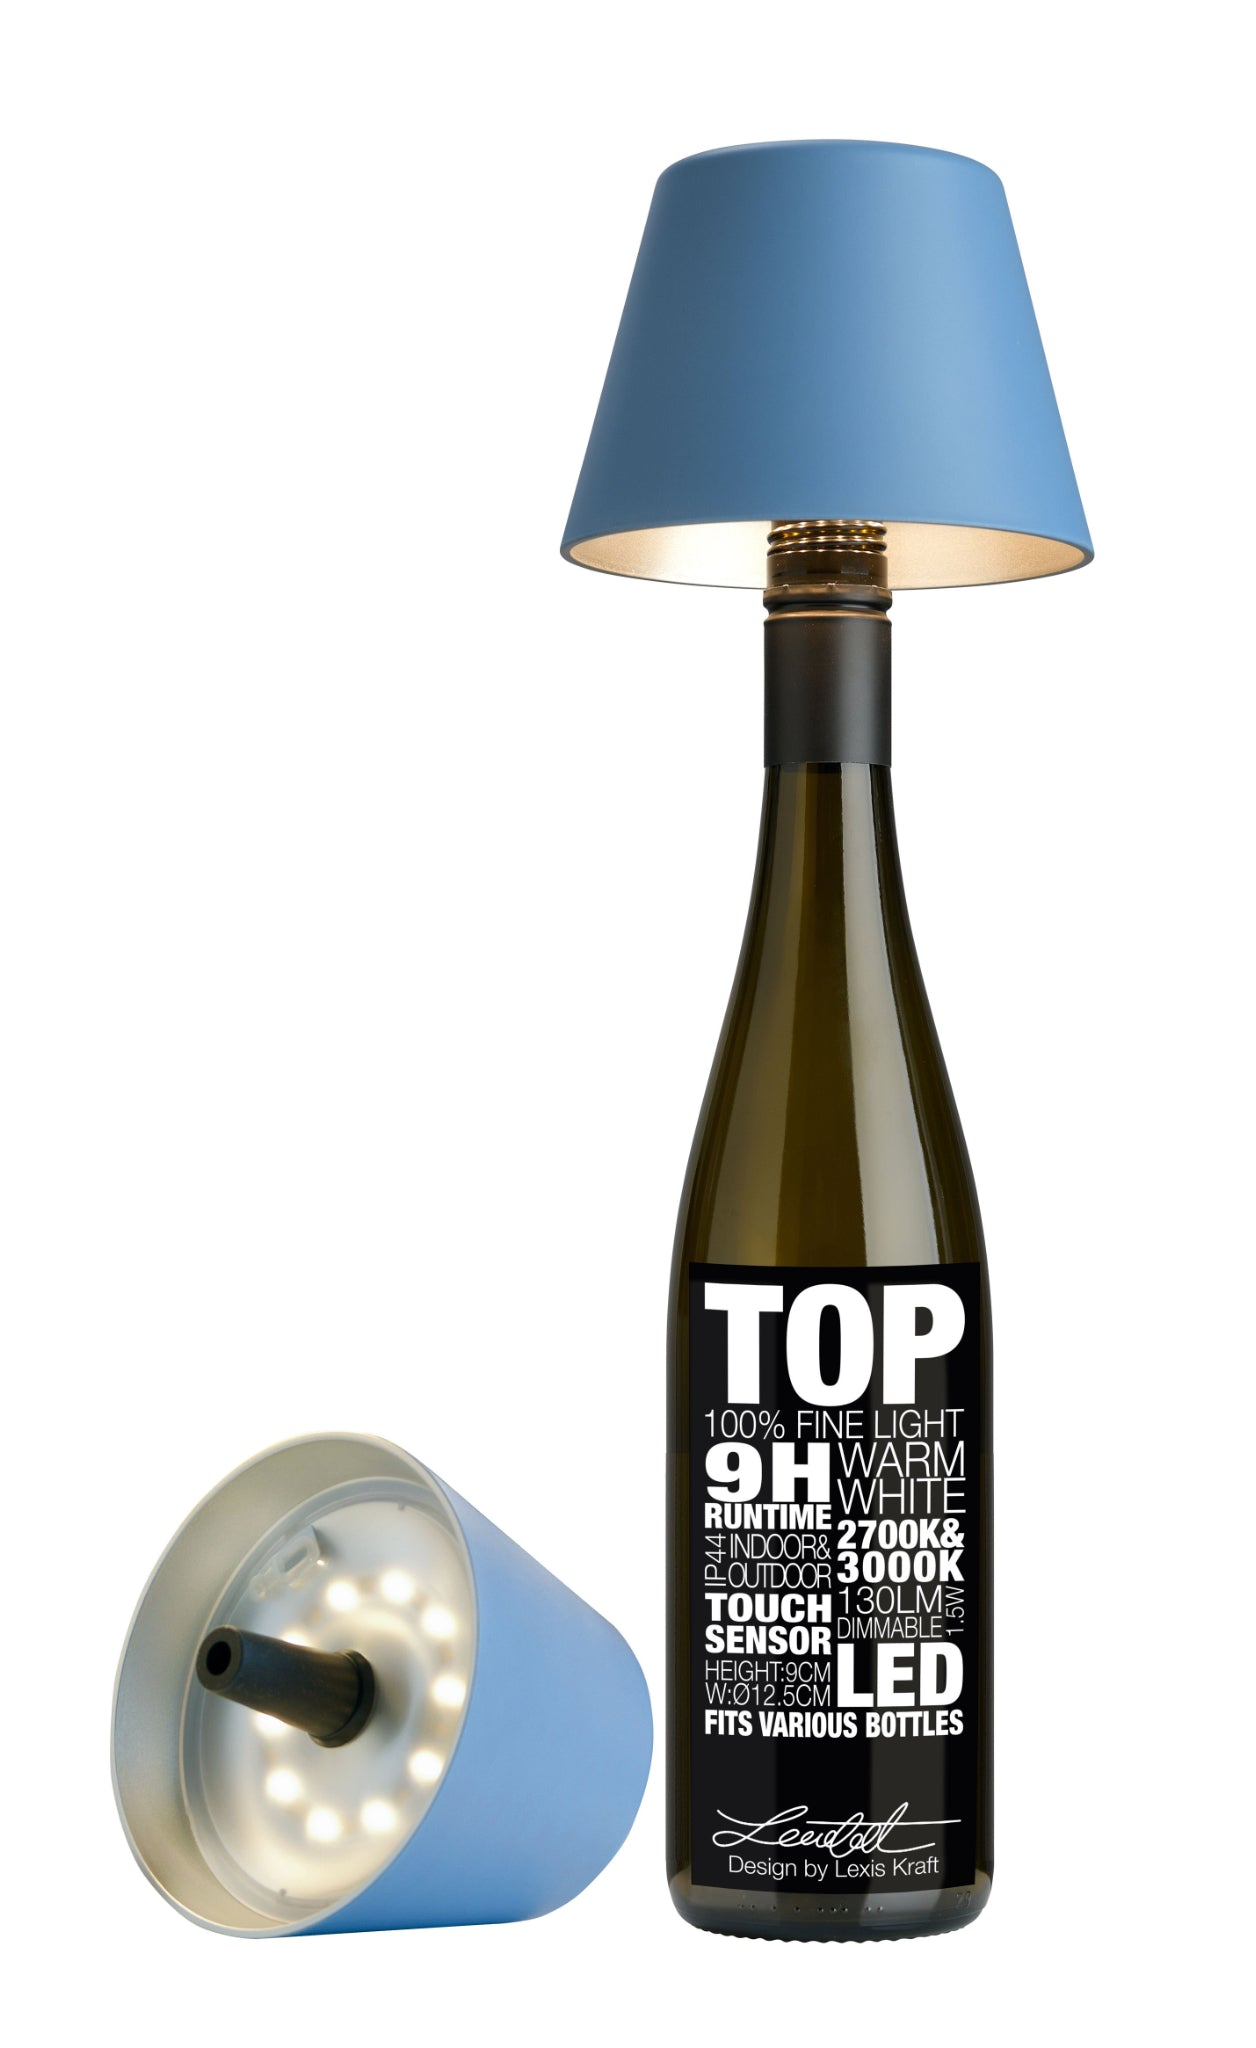 Blaue Sompex TOP 2.0 Flaschenleuchte mit Akku für weißes und farbiges Licht